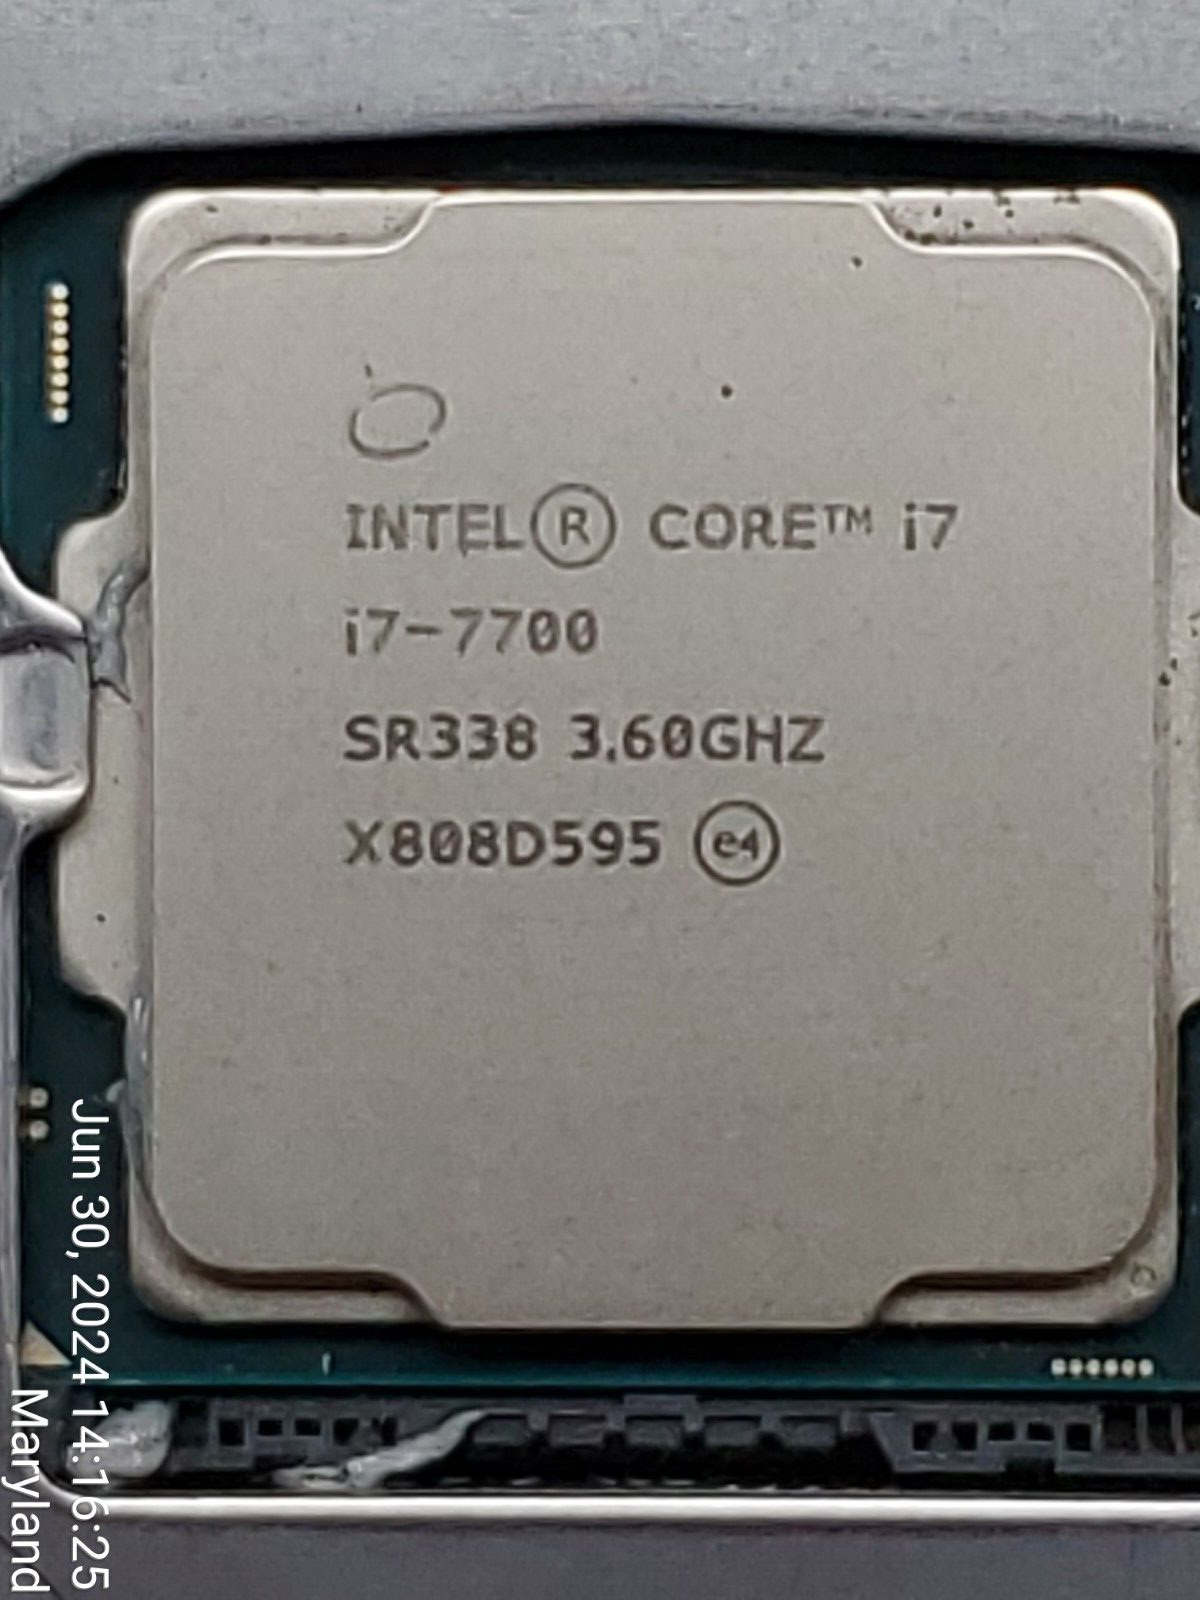 Intel i7-7700 - Quad Core CPU @ 3.60GHz LGA 1151 7th Gen SR338